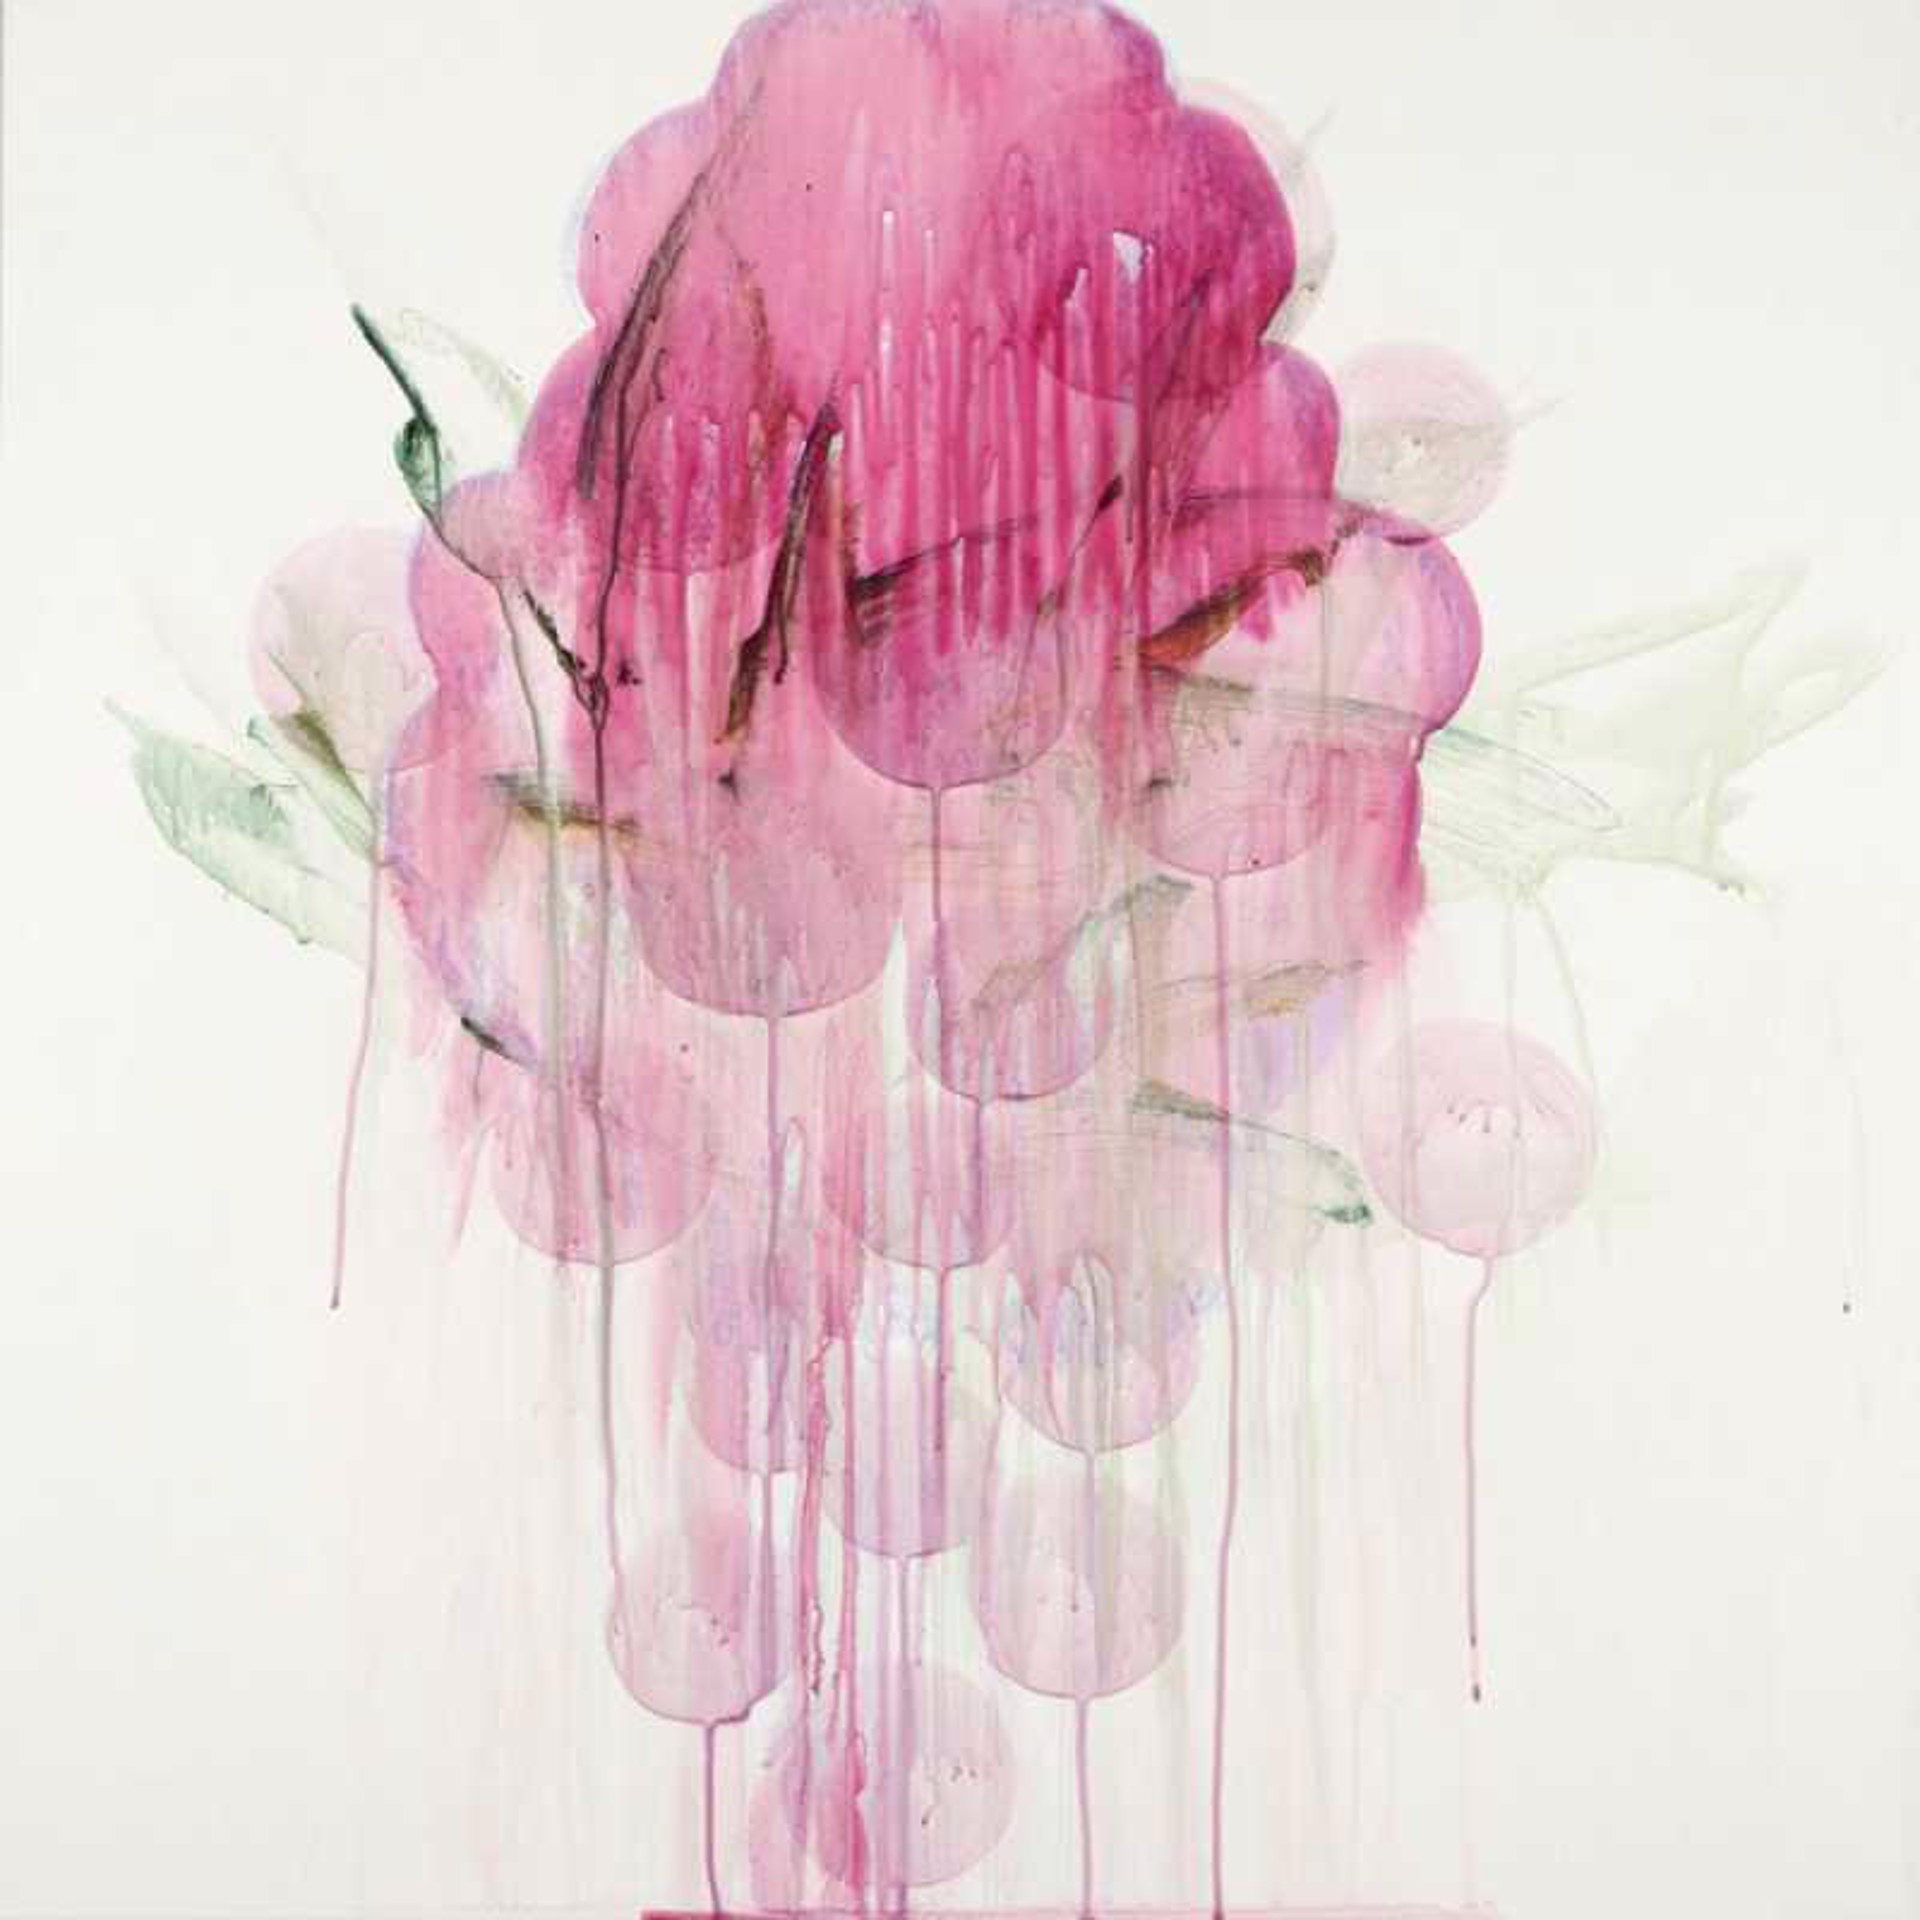 Wild Blossom by Shawn Hall